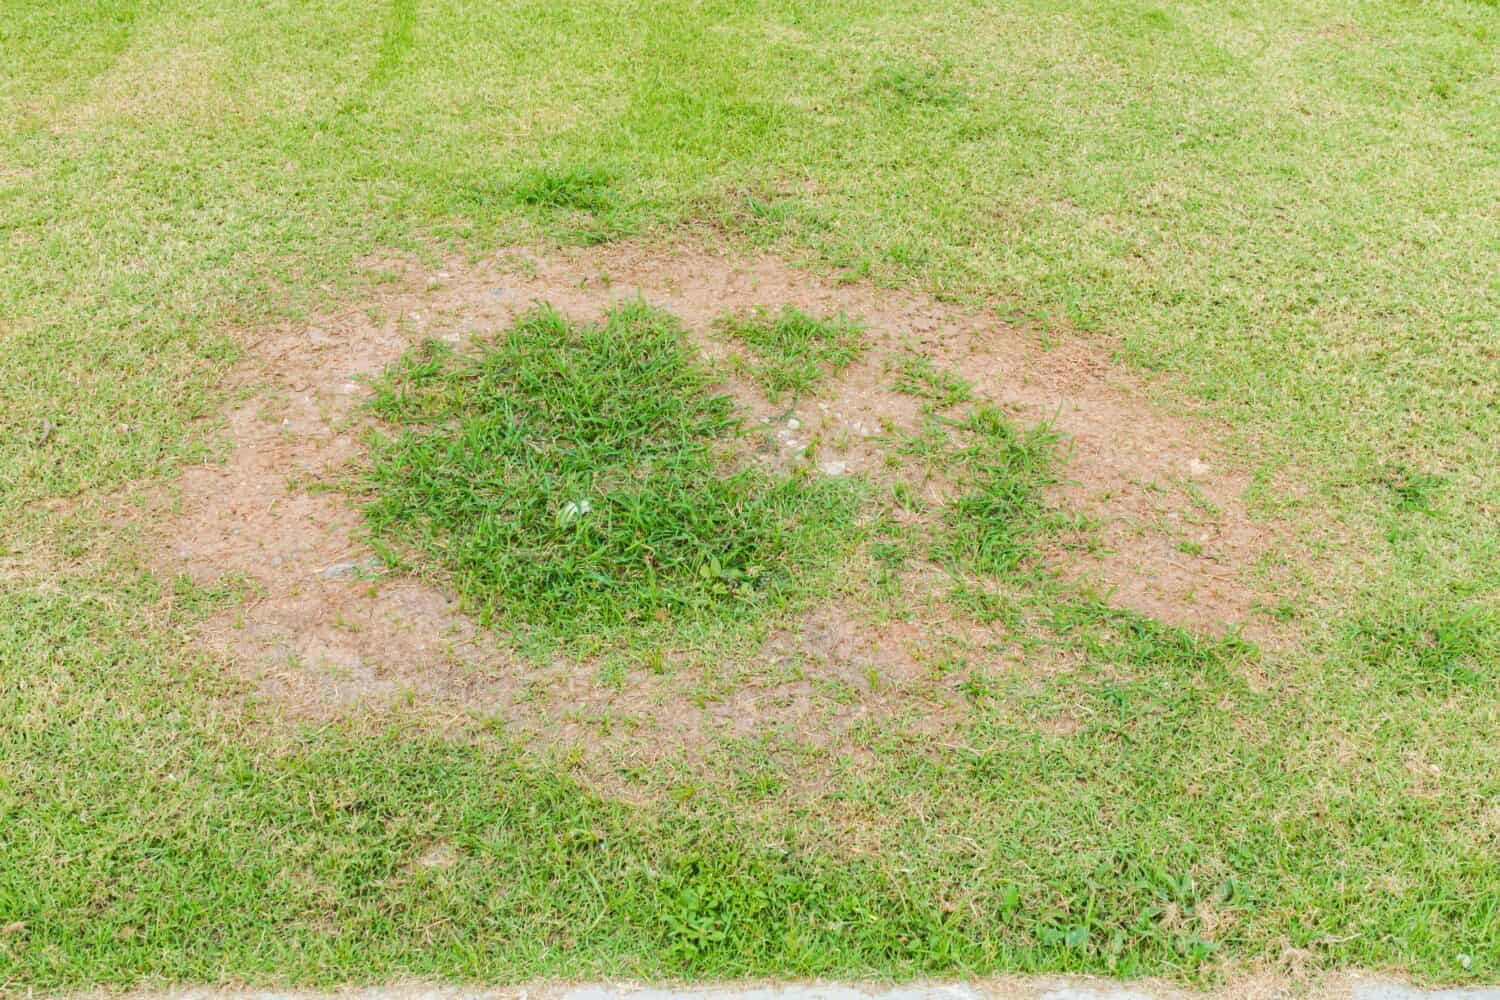 Una patch è causata dalla distruzione del fungo Rhizoctonia Solani foglia d'erba cambia da verde a marrone morto in un cerchio prato texture sfondo erba secca morta.  Erba morta sullo sfondo della natura.